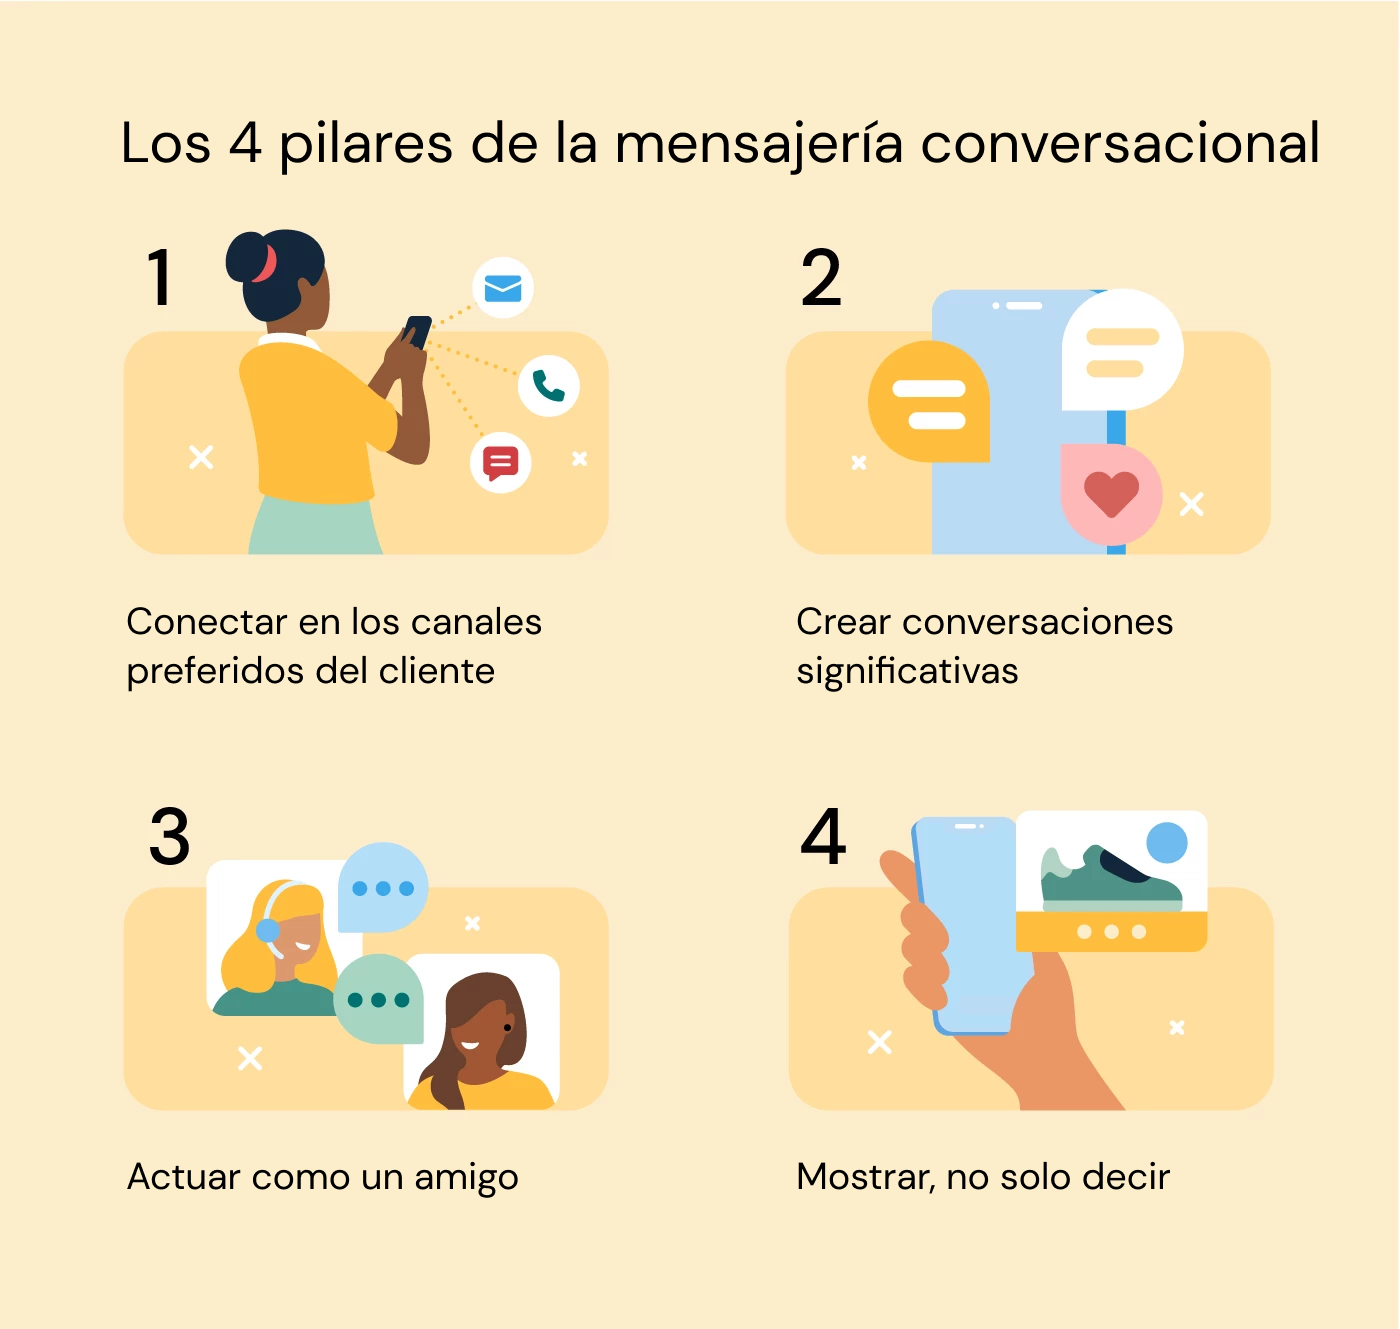 la ilustración muestra cuatro componentes importantes del comercio conversacional